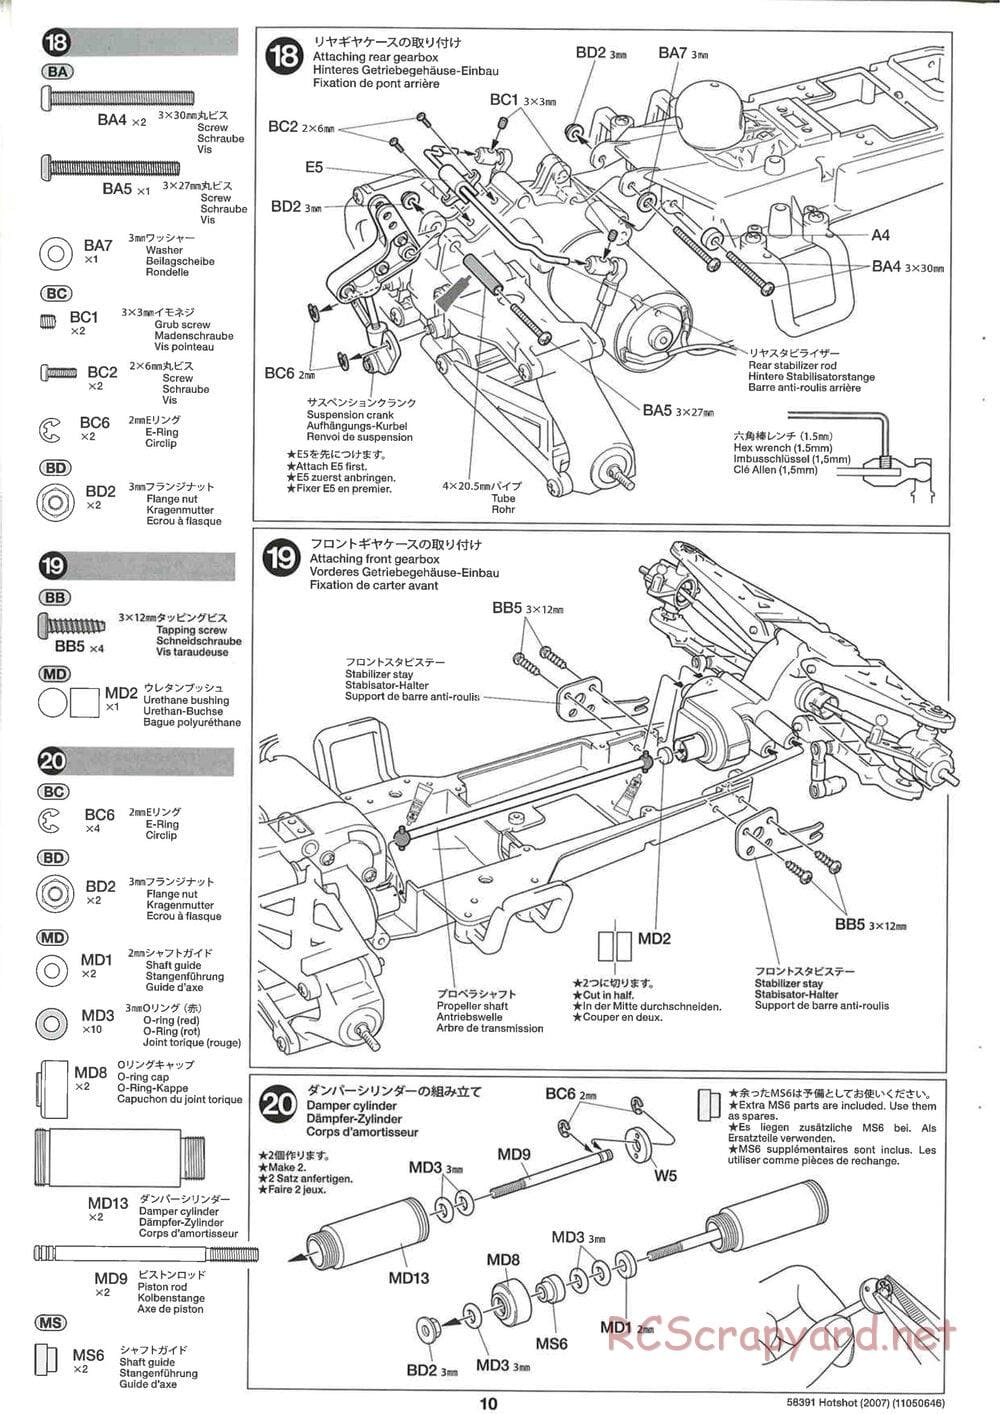 Tamiya - Hotshot - 2007 - HS Chassis - Manual - Page 10